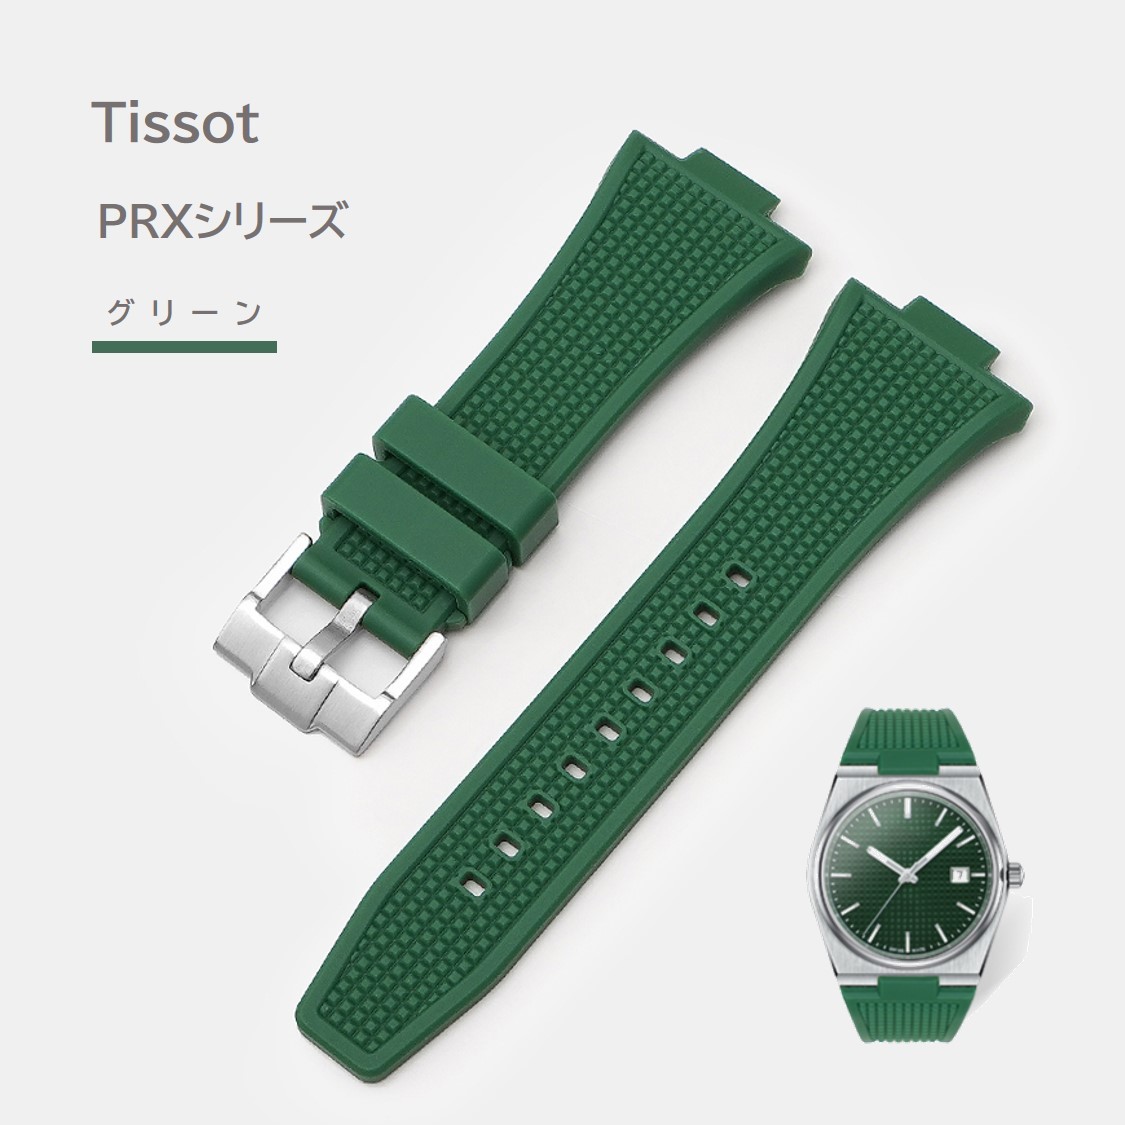 Tissot PRXシリーズ ラバーベルト グリーン